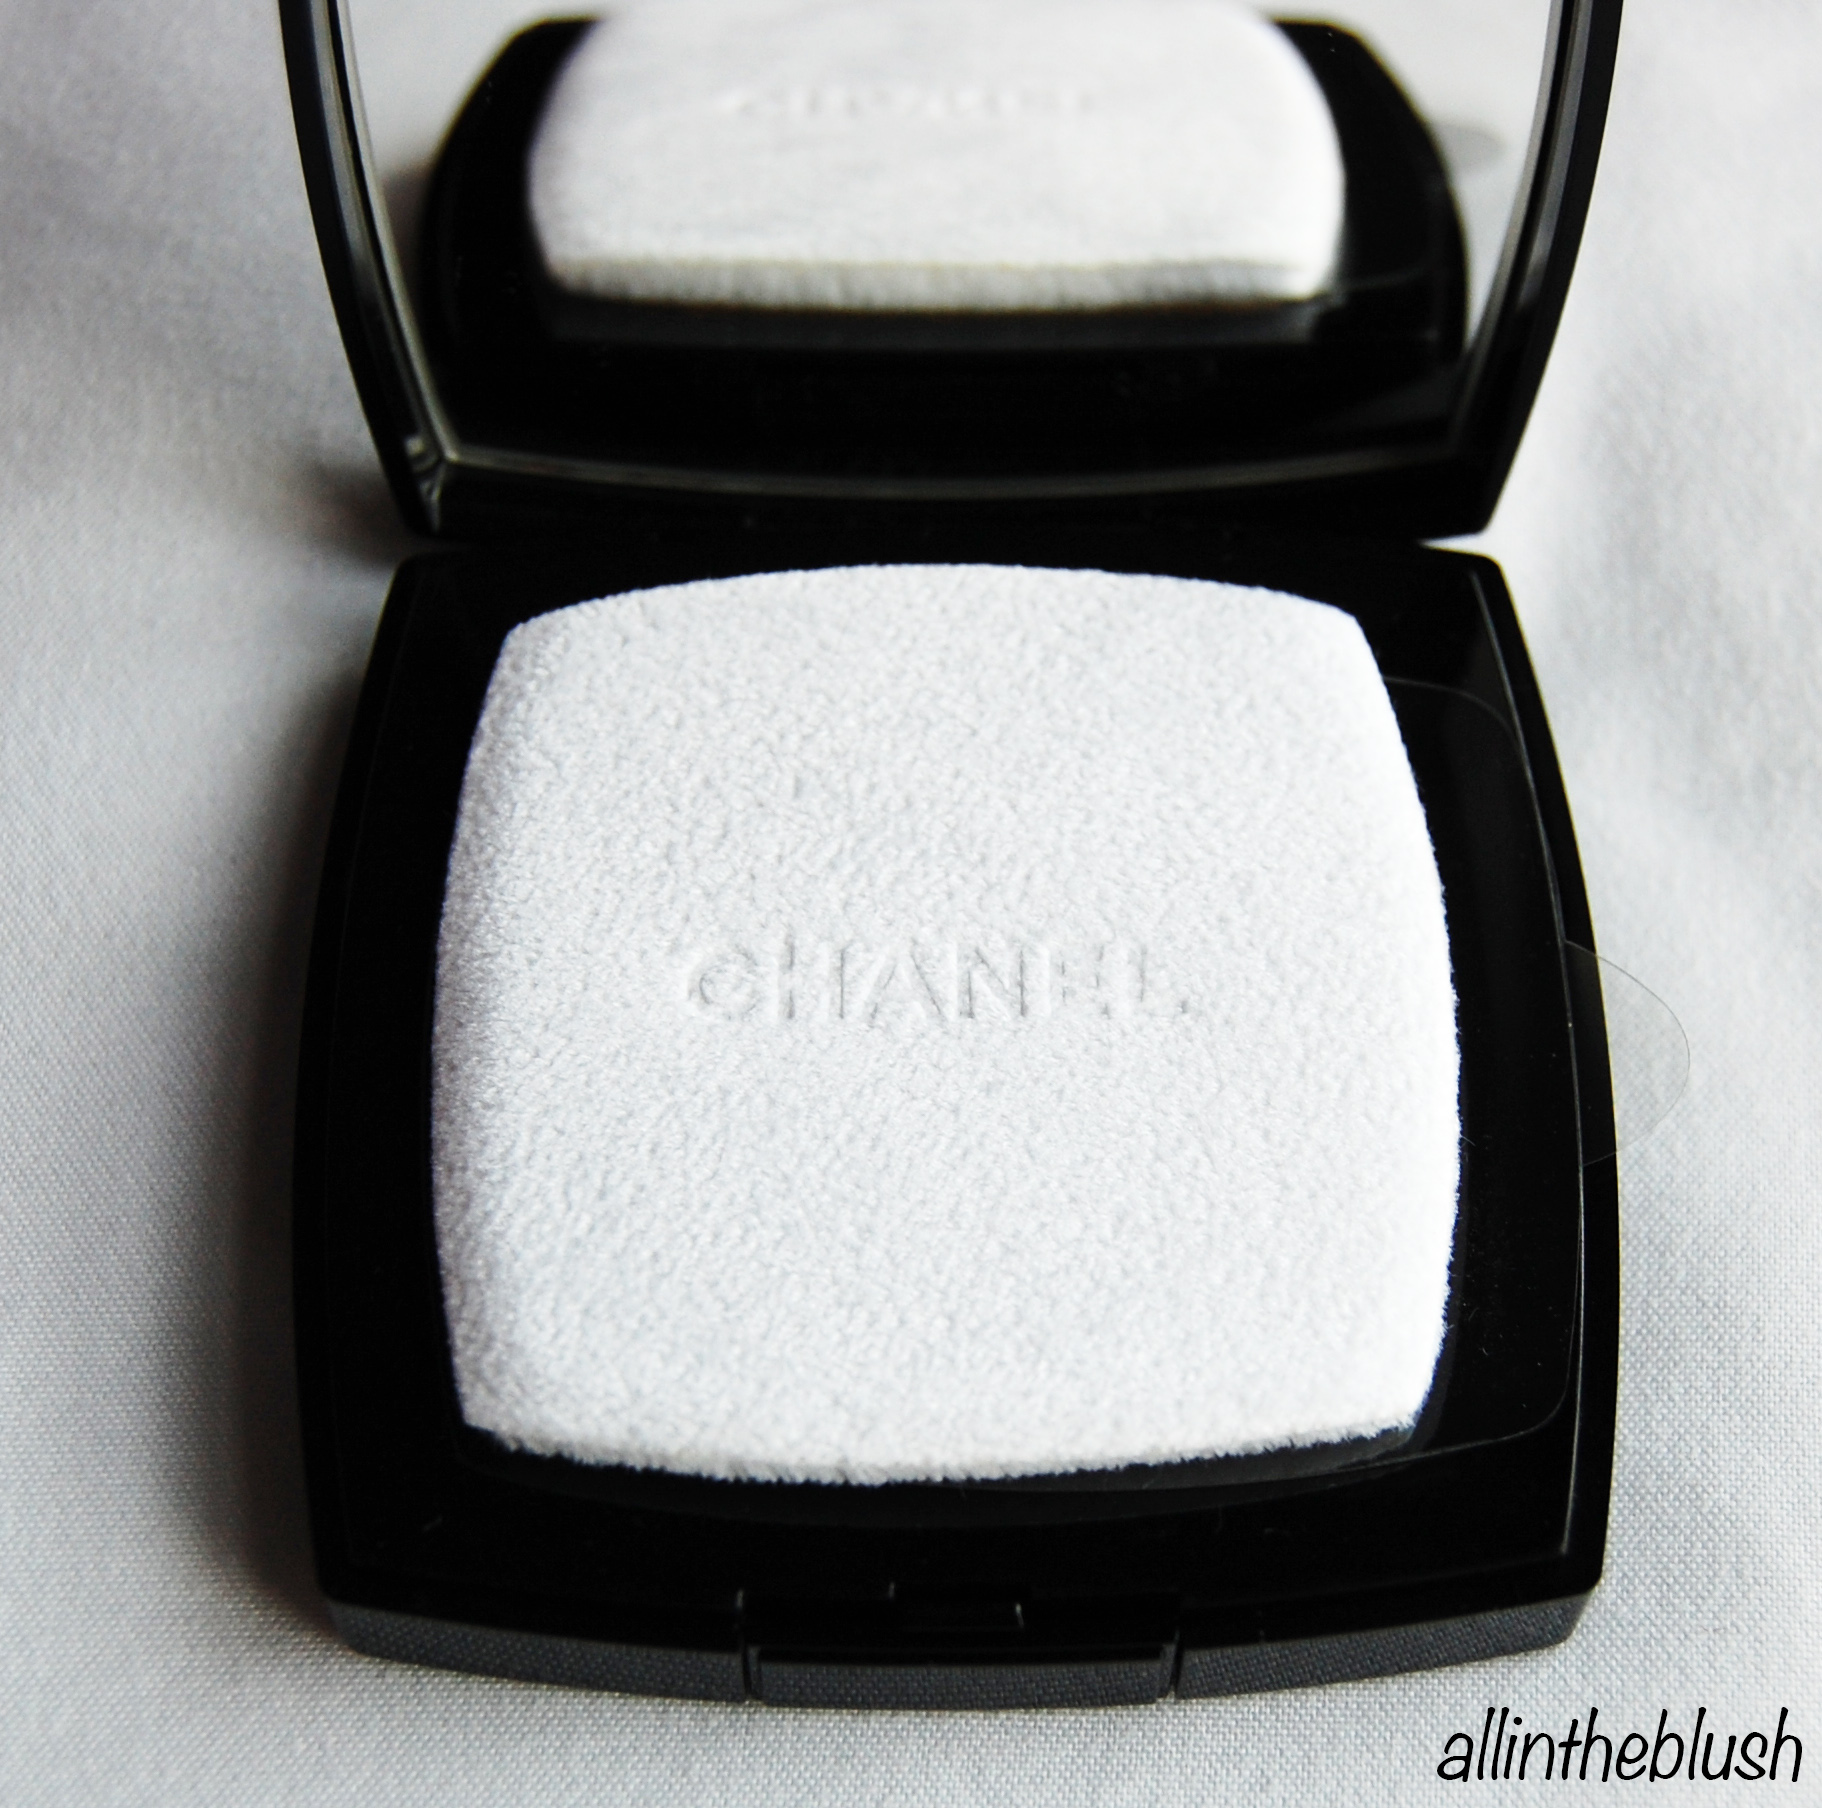 Chanel Poudre Universelle Compacte